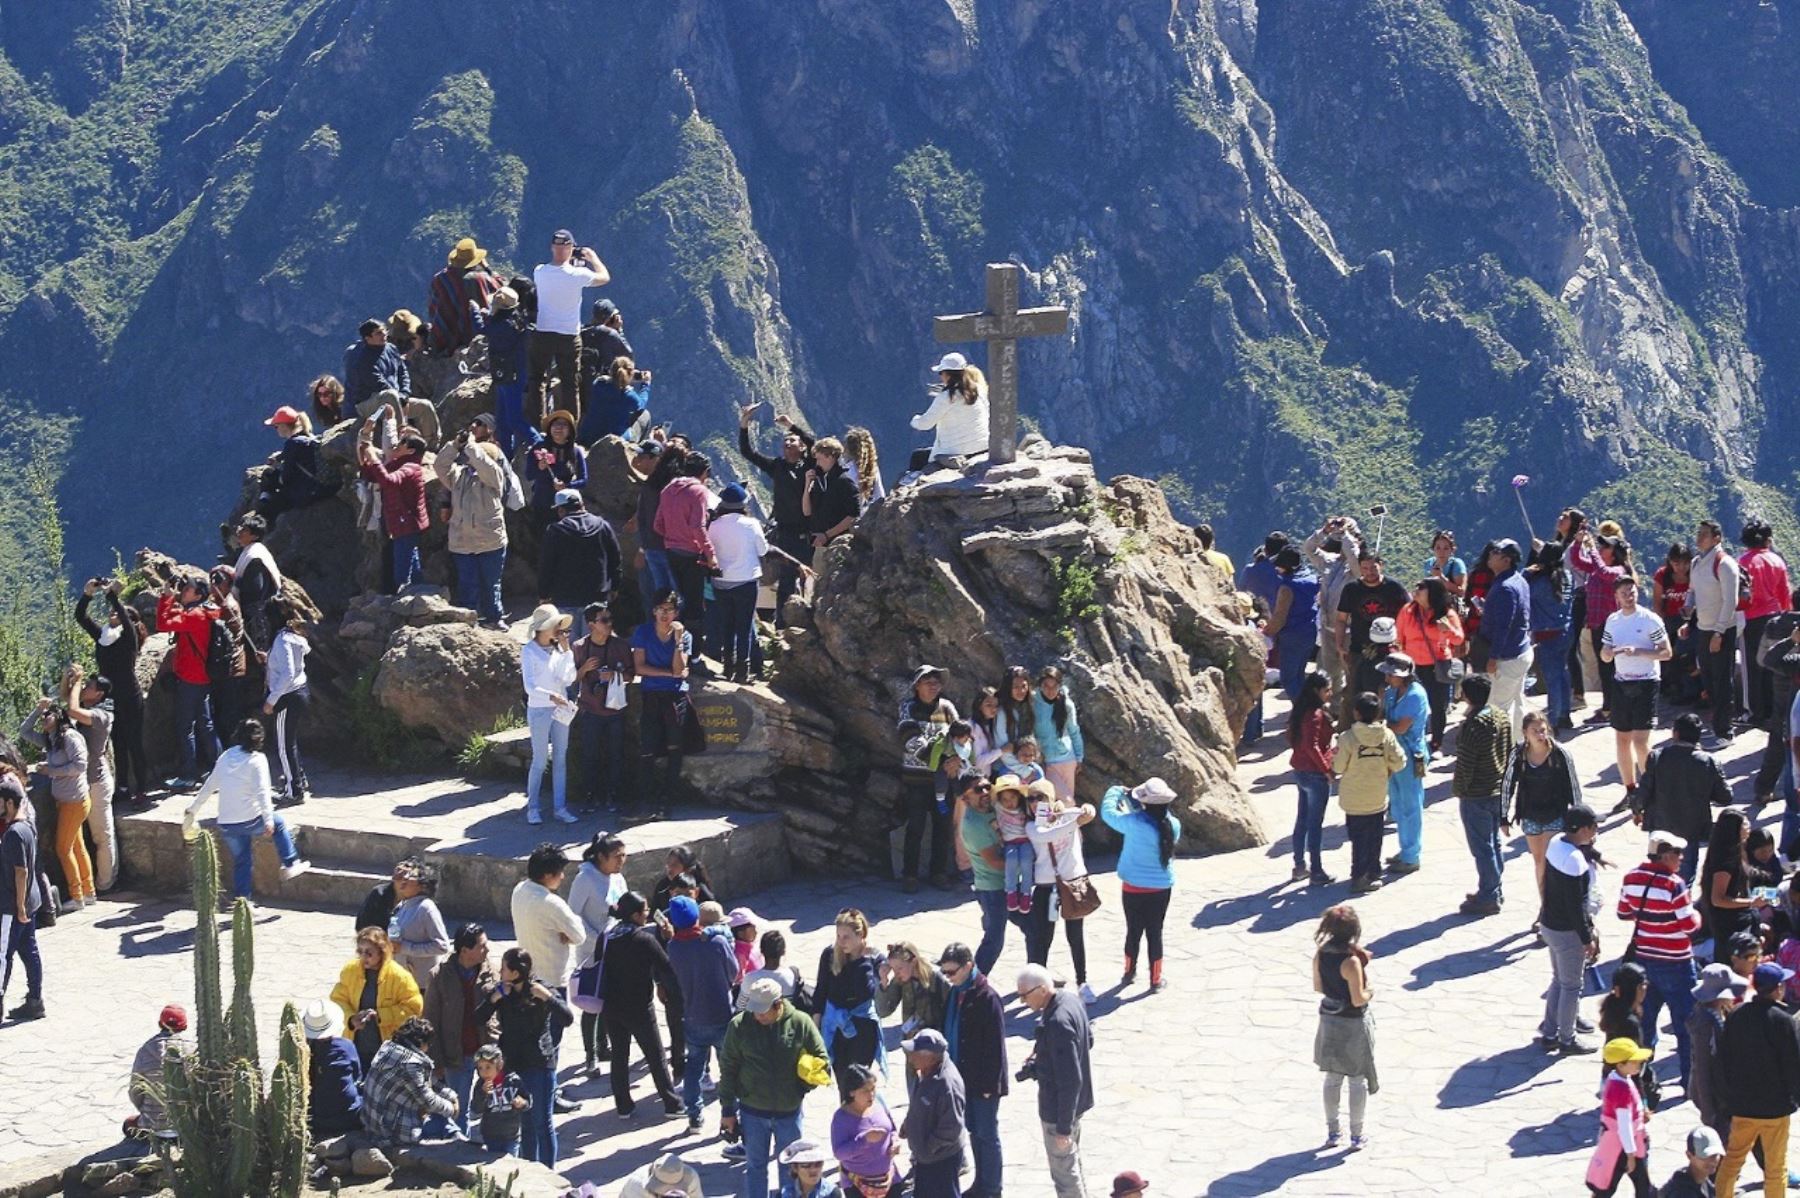 El valle del Colca, en Arequipa, recibió 121,854 turistas durante los primeros seis meses del año, cifra superior a la registrada en el mismo periodo del 2017, lo que coloca a la zona como el primer destino turístico de la región después del Monasterio de Santa Catalina. ANDINA